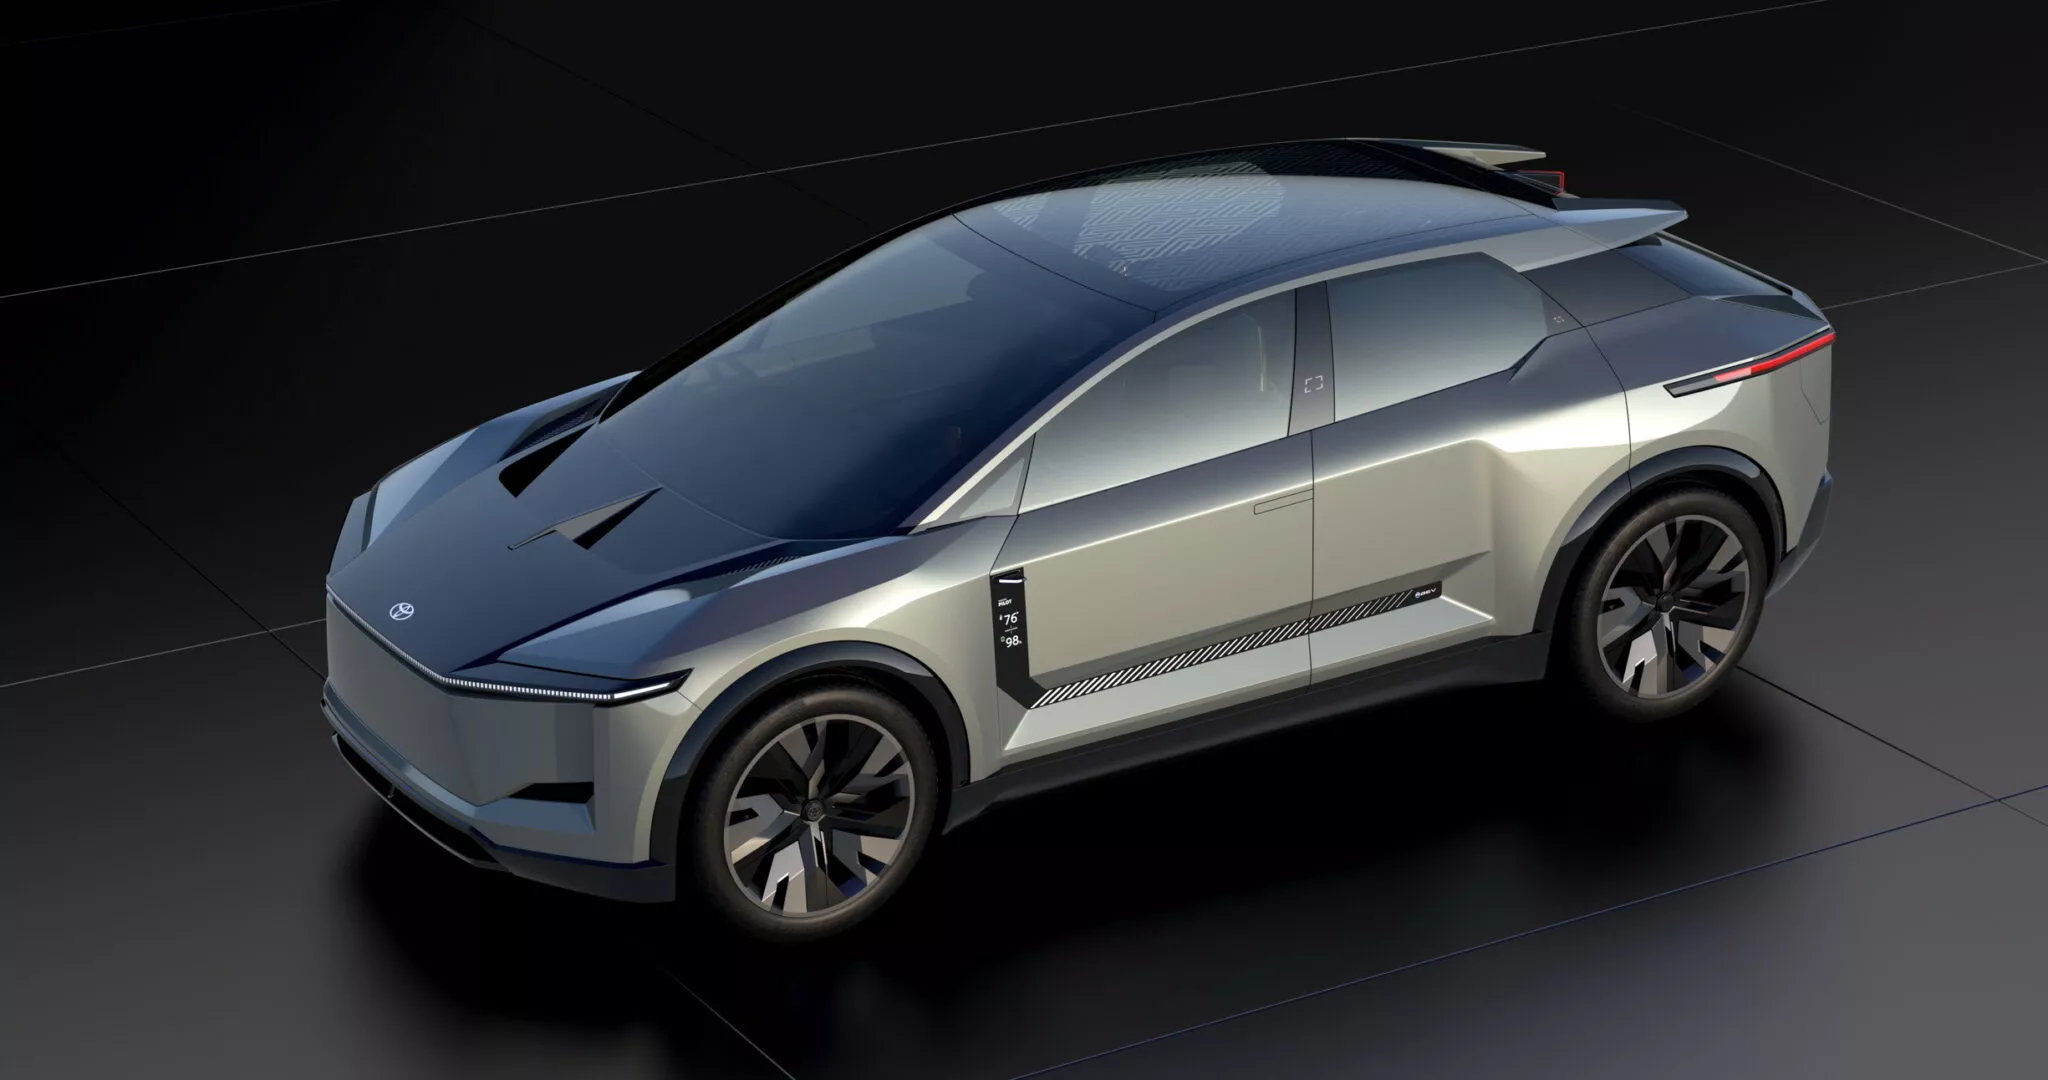 Chiêm ngưỡng Toyota FT-3e Concept: Mẫu SUV chạy điện với kiểu dáng sắc sảo toyota-ft3e-concept-ev-35-resize-2048x1080.webp